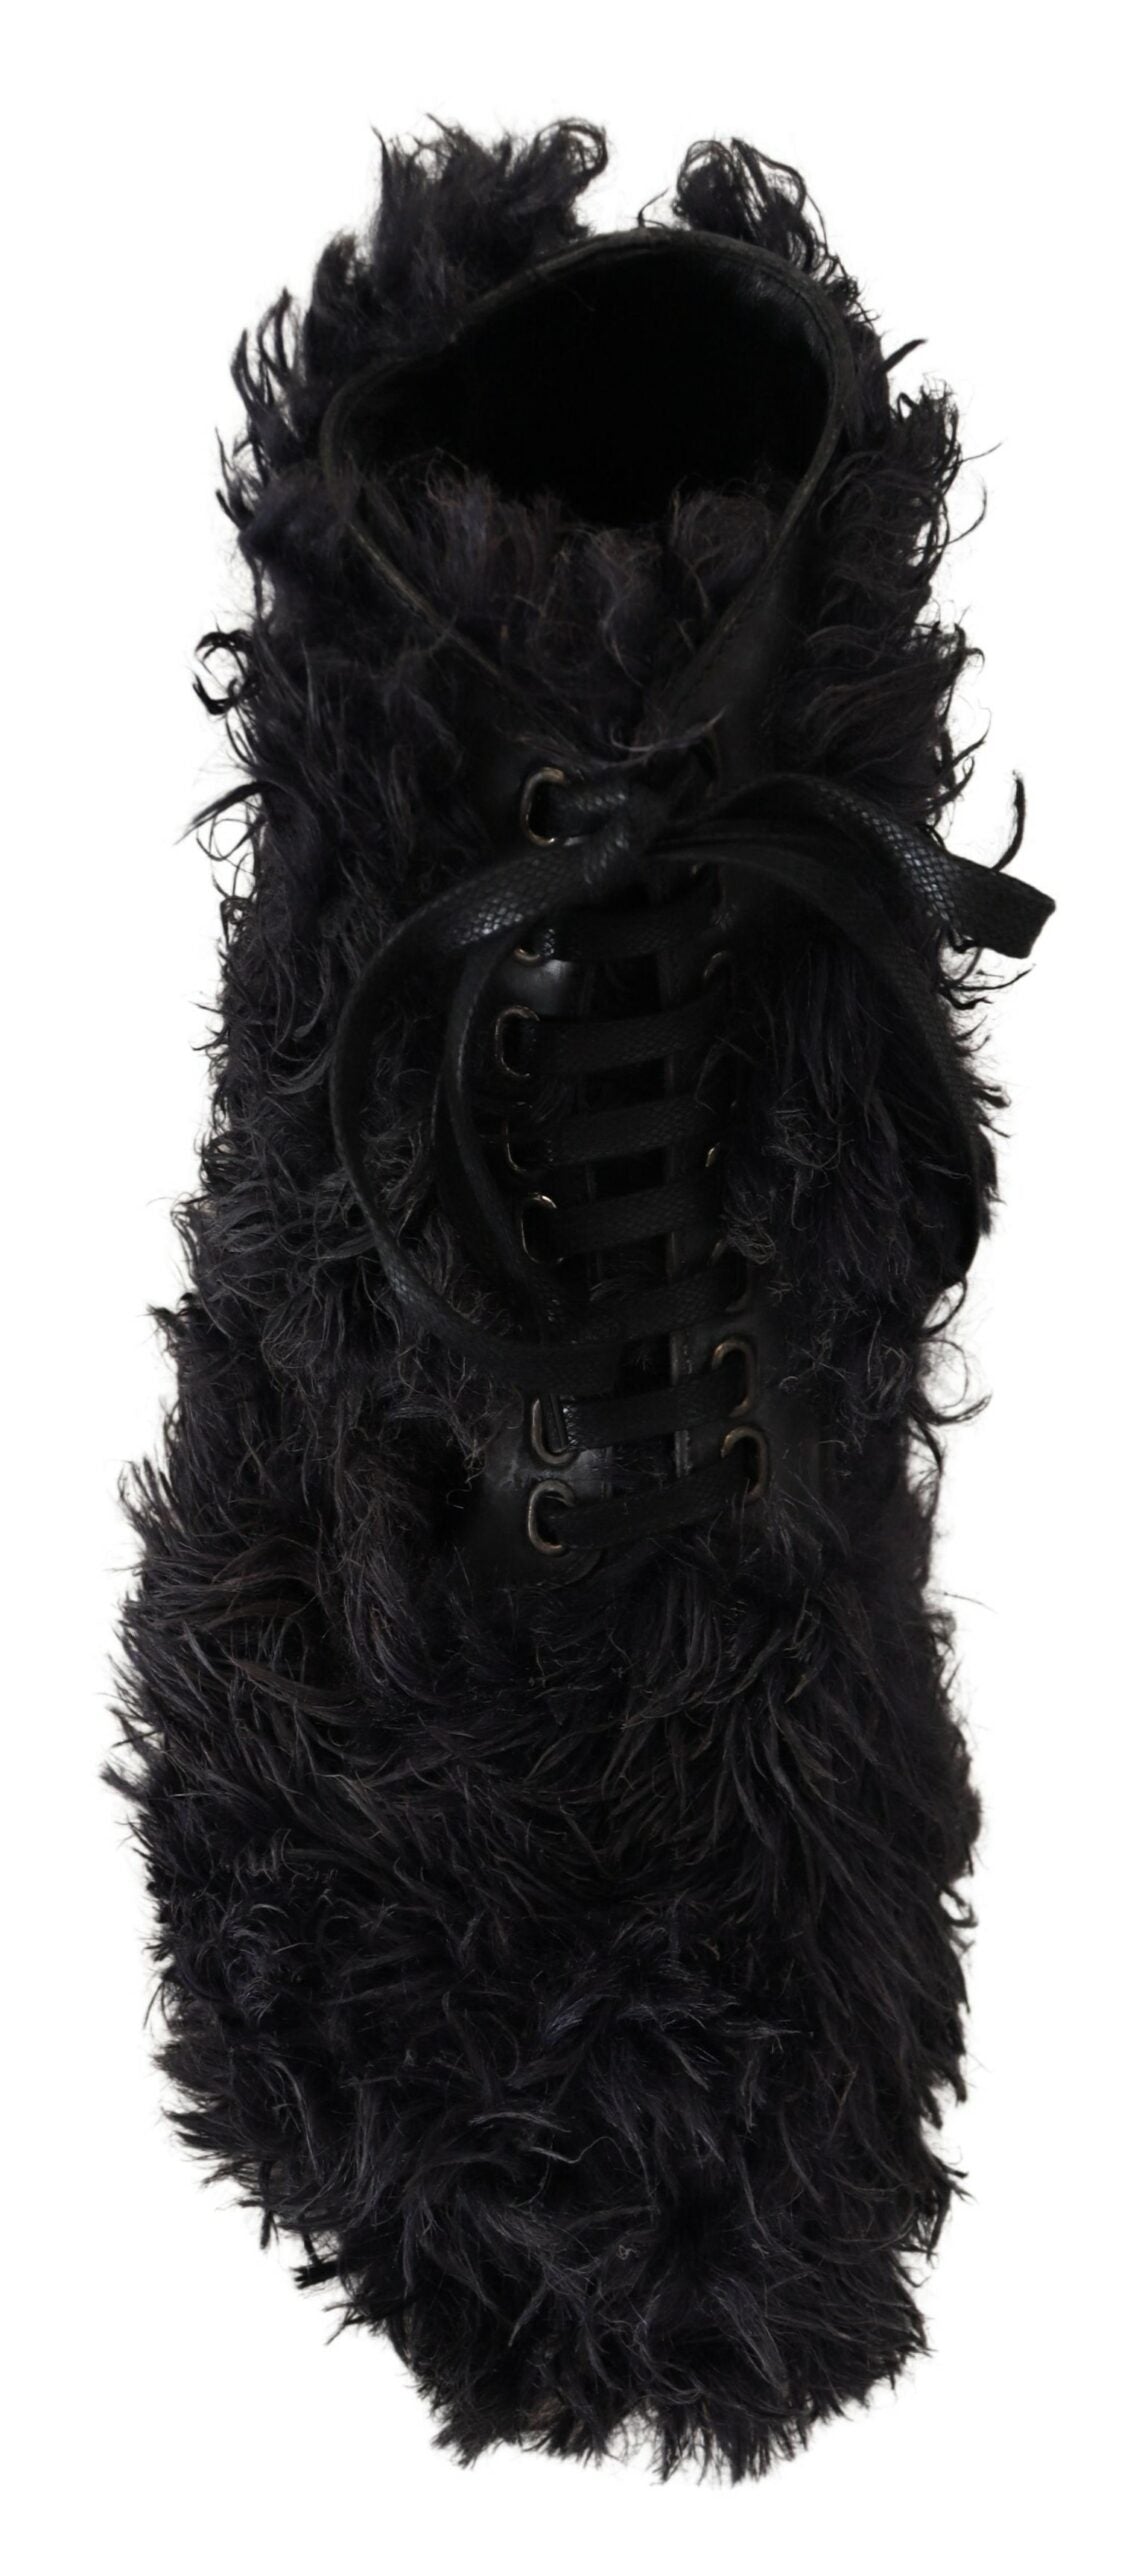 Scarpe da combattimento in pelle nera Dolce & Gabbana